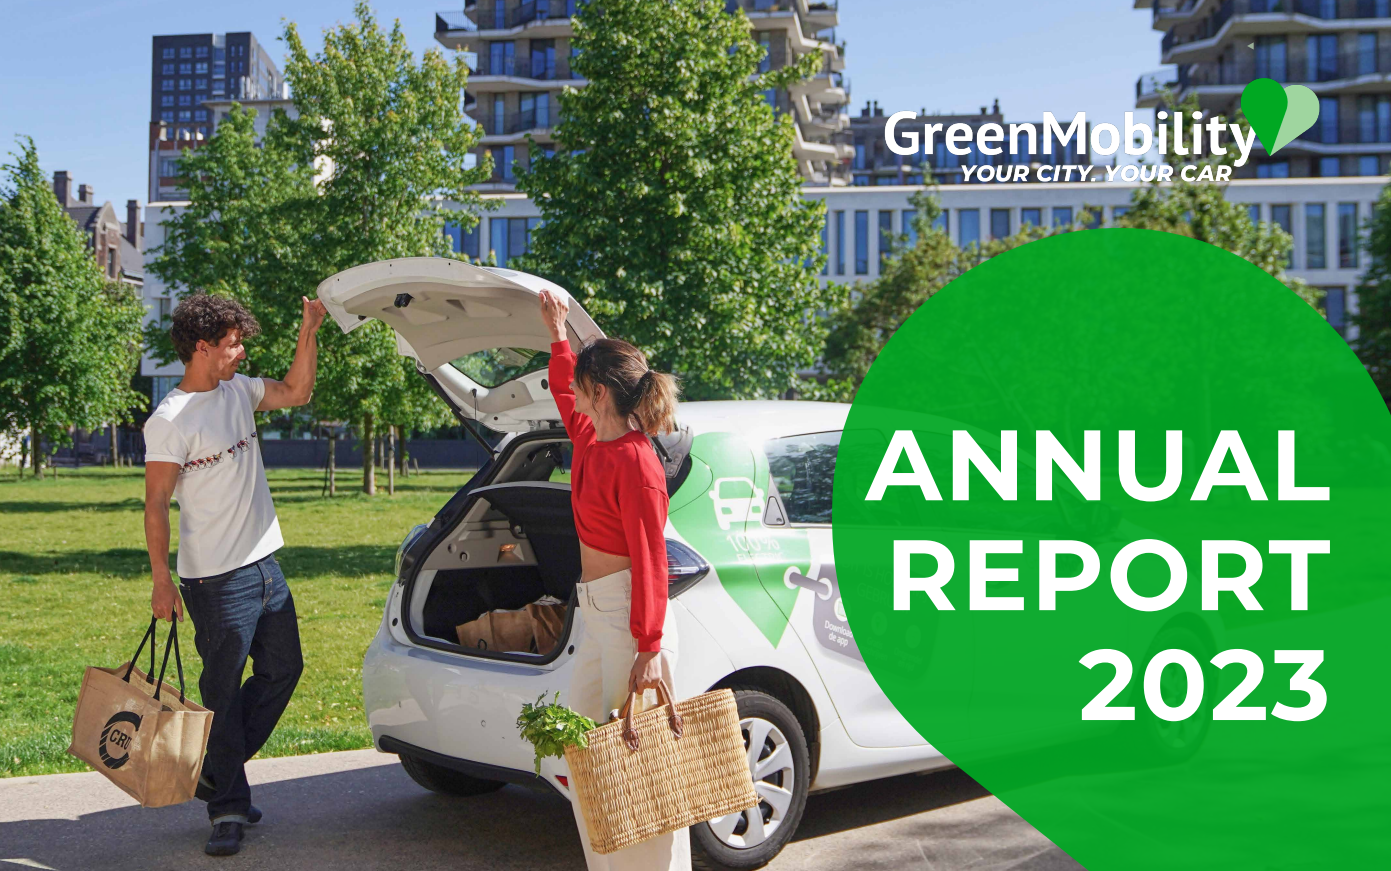 GreenMobility løfter omsætningen 25%